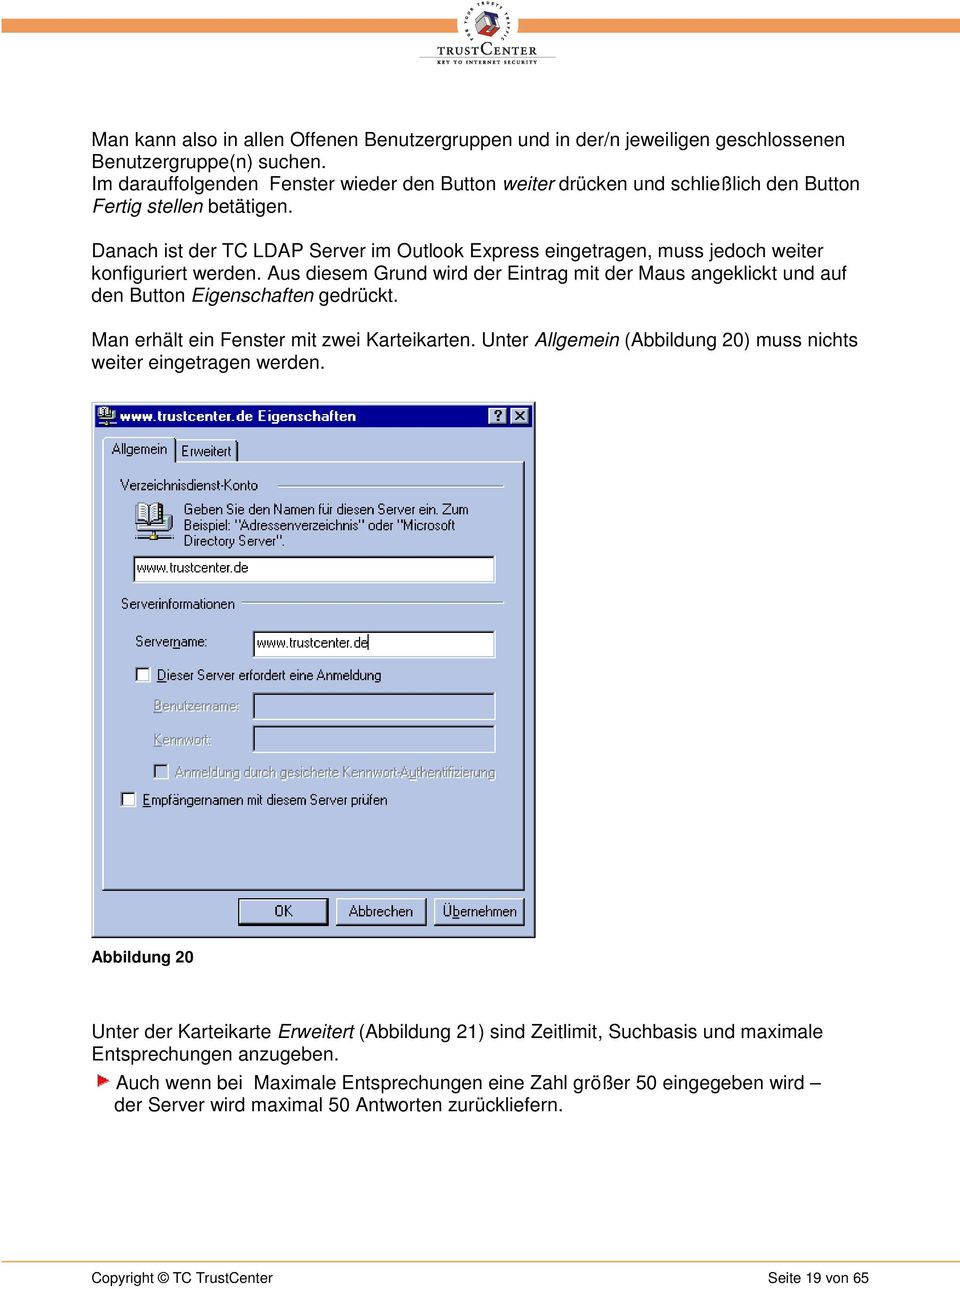 Danach ist der TC LDAP Server im Outlook Express eingetragen, muss jedoch weiter konfiguriert werden.